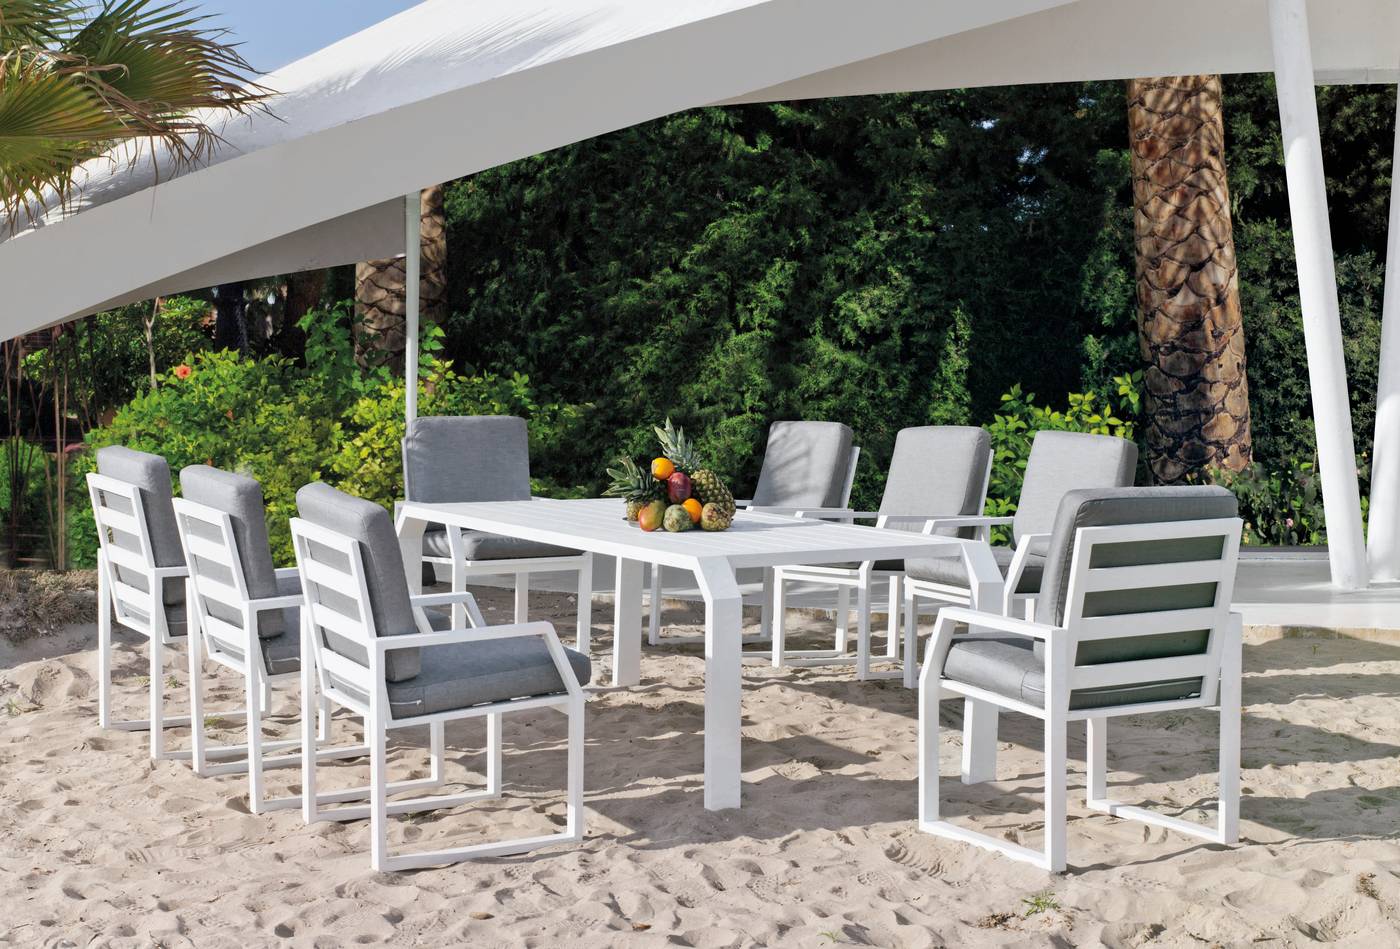 Conjunto de aluminio luxe: Mesa de comedor de 240 cm. + 8 sillones + cojines. Disponible en color blanco, antracita, champagne, plata o marrón.